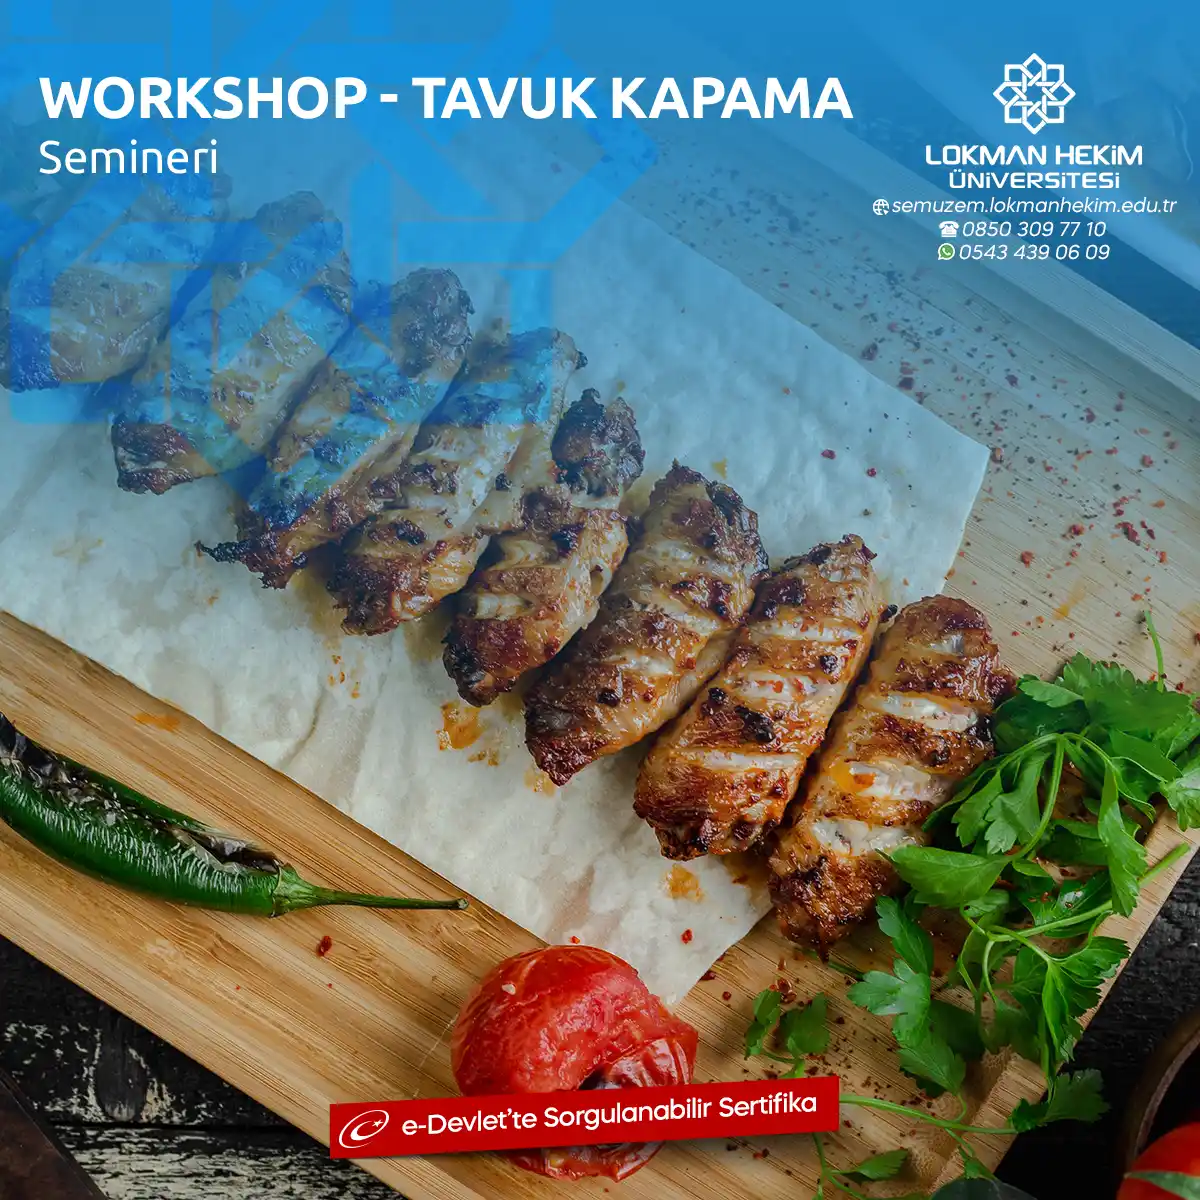 Workshop - Tavuk Kapama Semineri